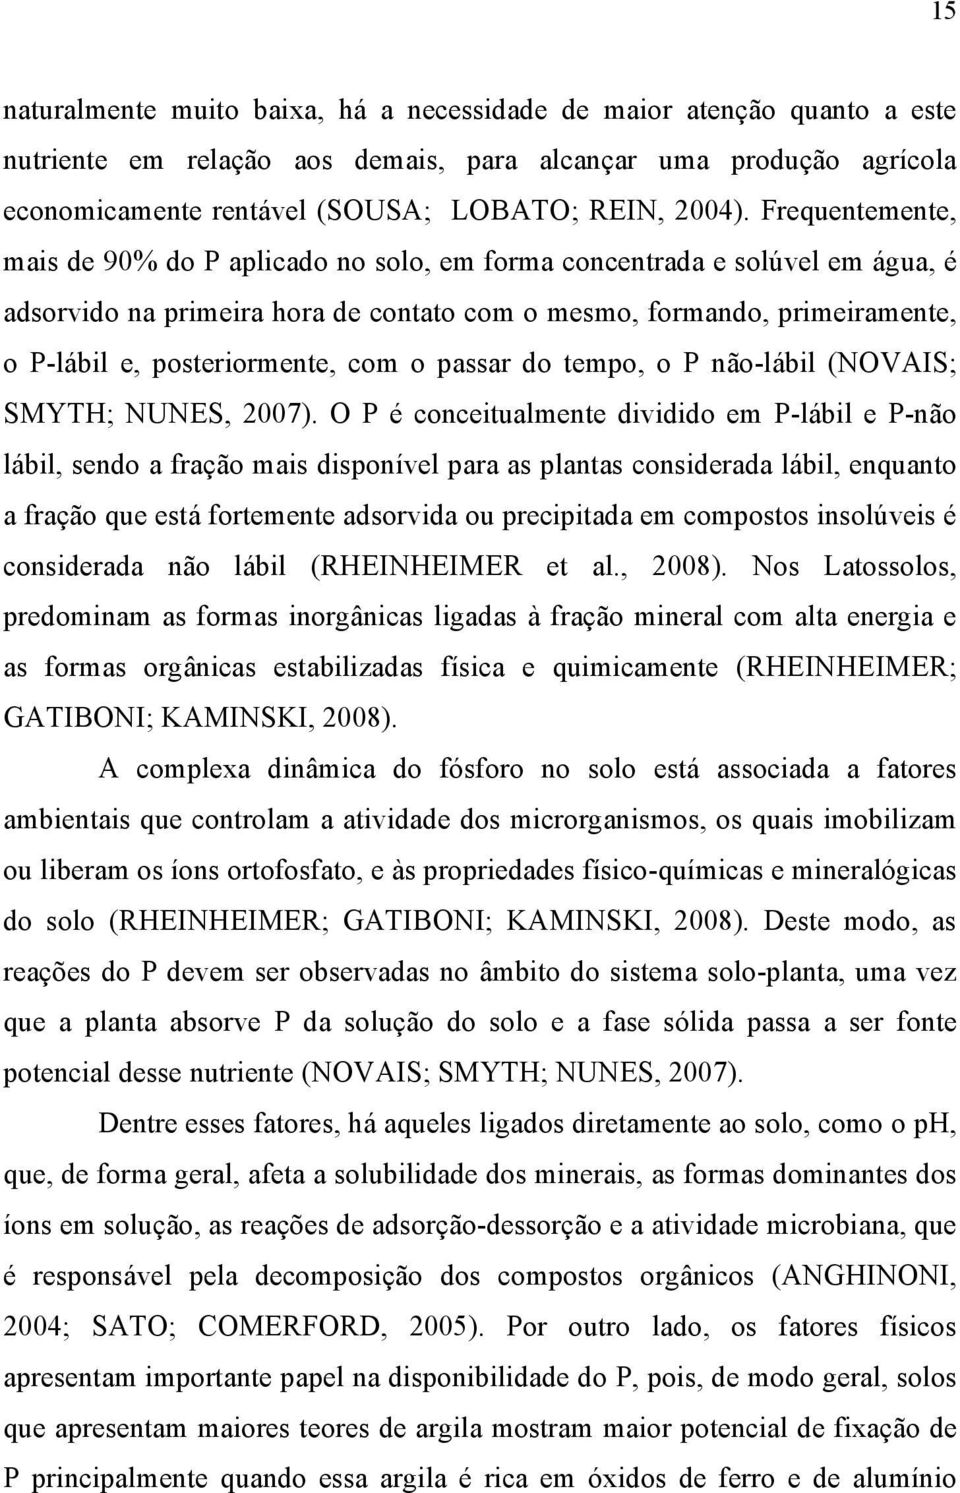 tempo, o P não-láil (NOVAIS; SMYTH; NUNES, 2007).